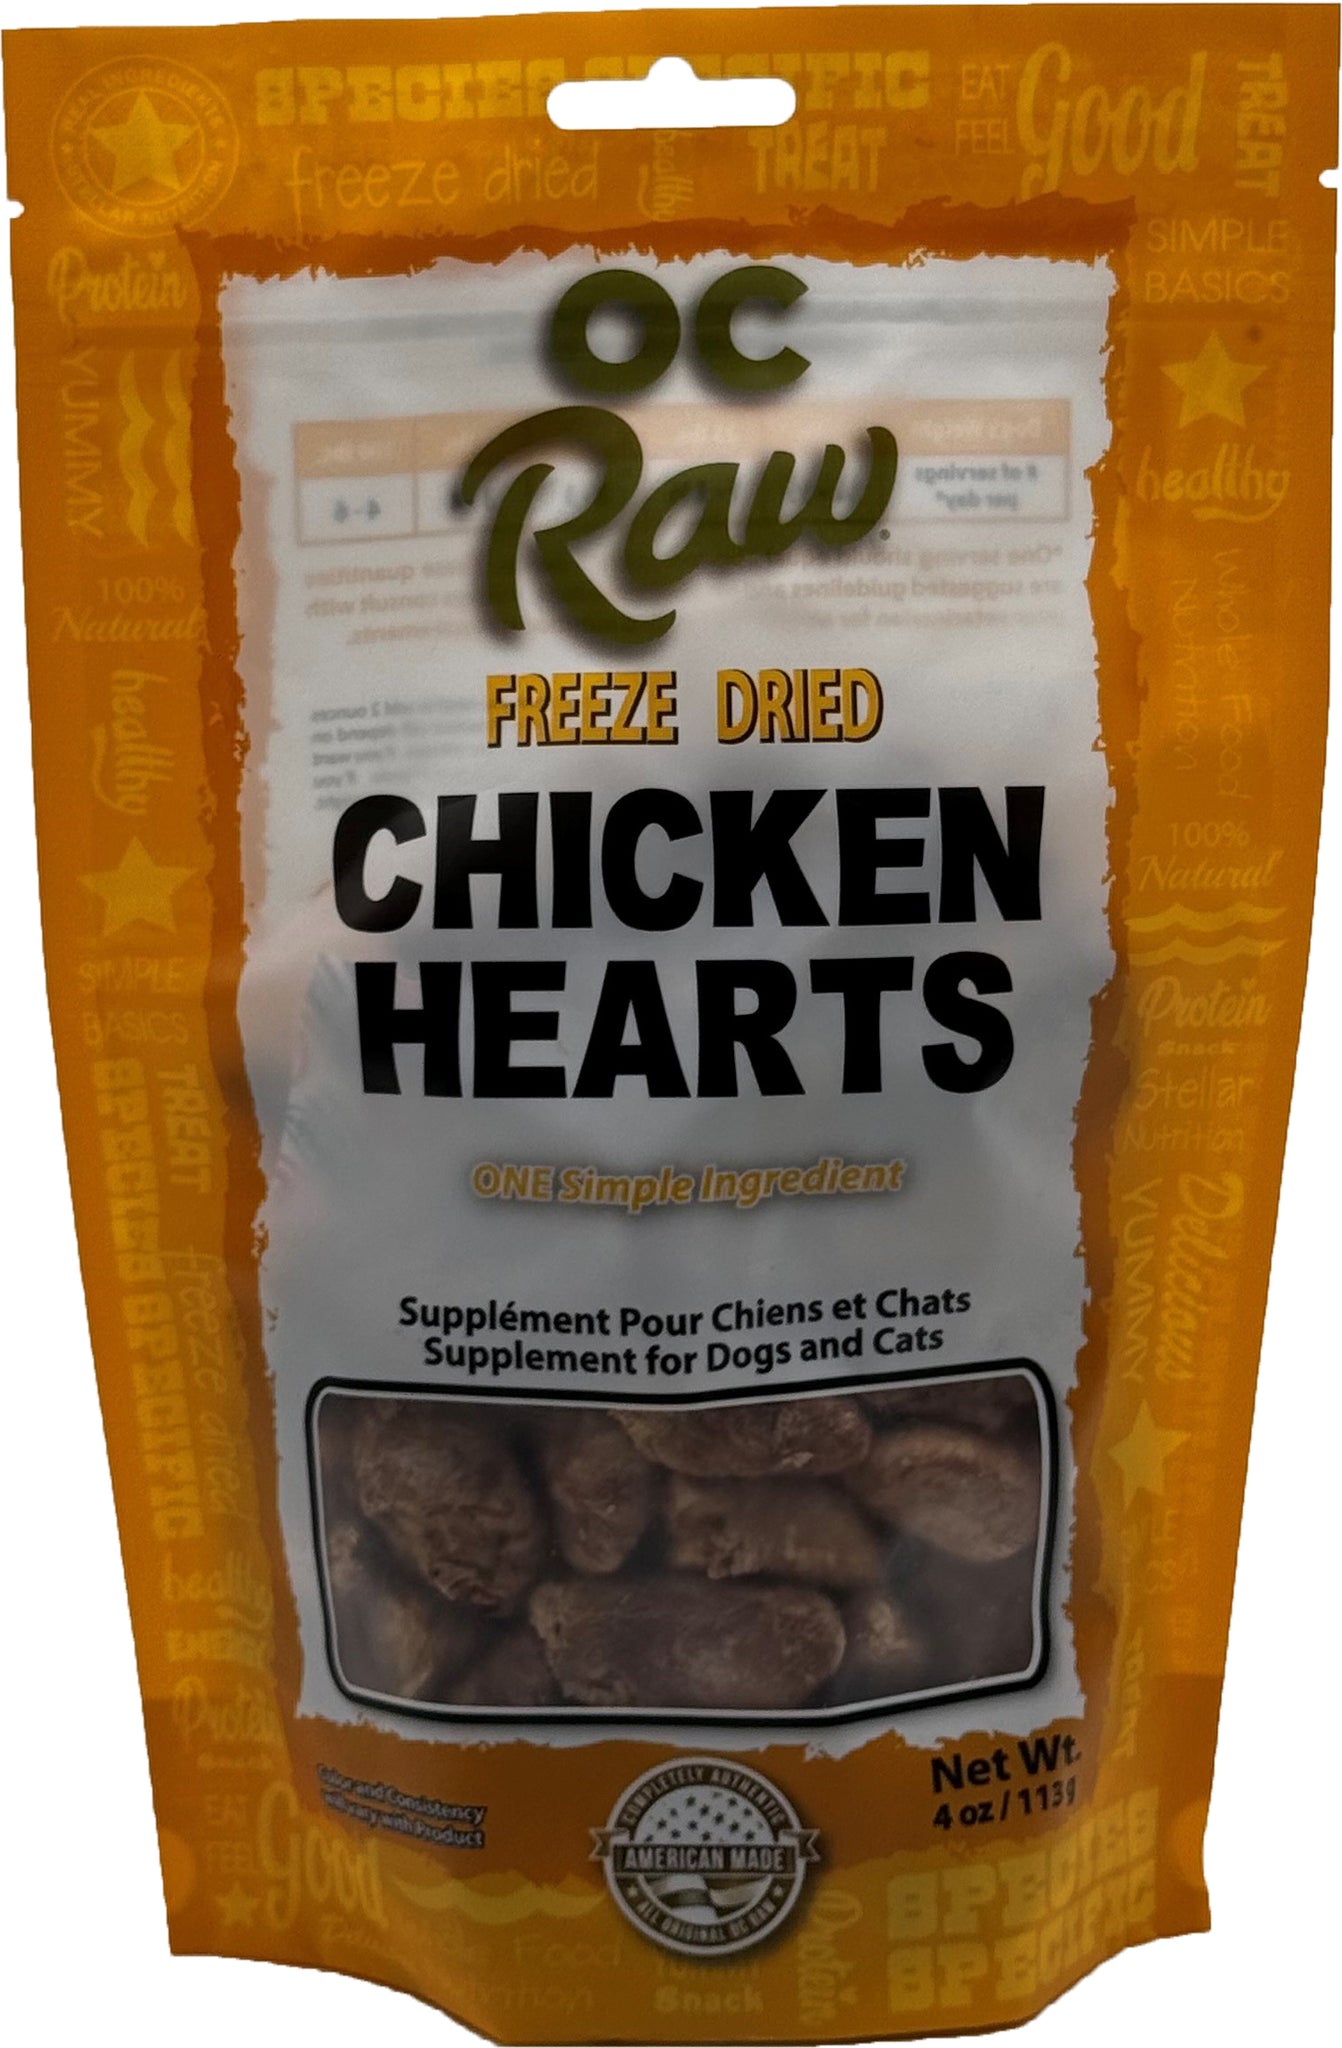 OC Raw Freeze Dried Raw Chicken Hearts